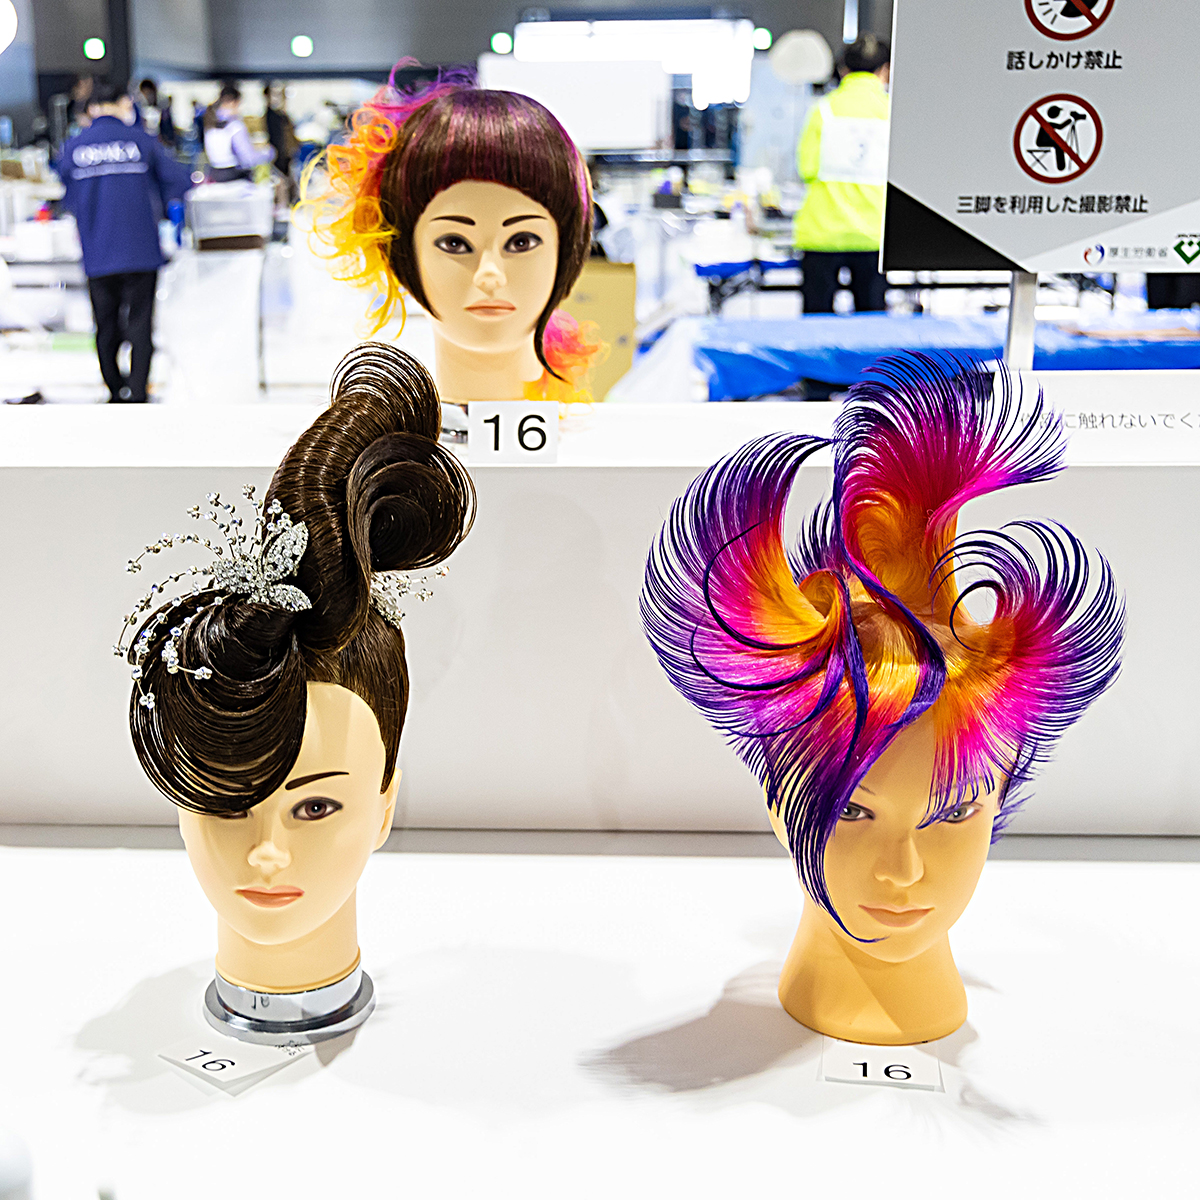 技能五輪全国大会「美容」職種！ 概要① 競技は2日に分けて行われ、一般的なデイスタイルや結婚式用のブライダルヘアなど、さまざまなヘアスタイルを作り上げていきます #WorldSkills #WorldSkillsJapan #技能五輪全国大会 #NationalSkills #美容 #Hairdressing